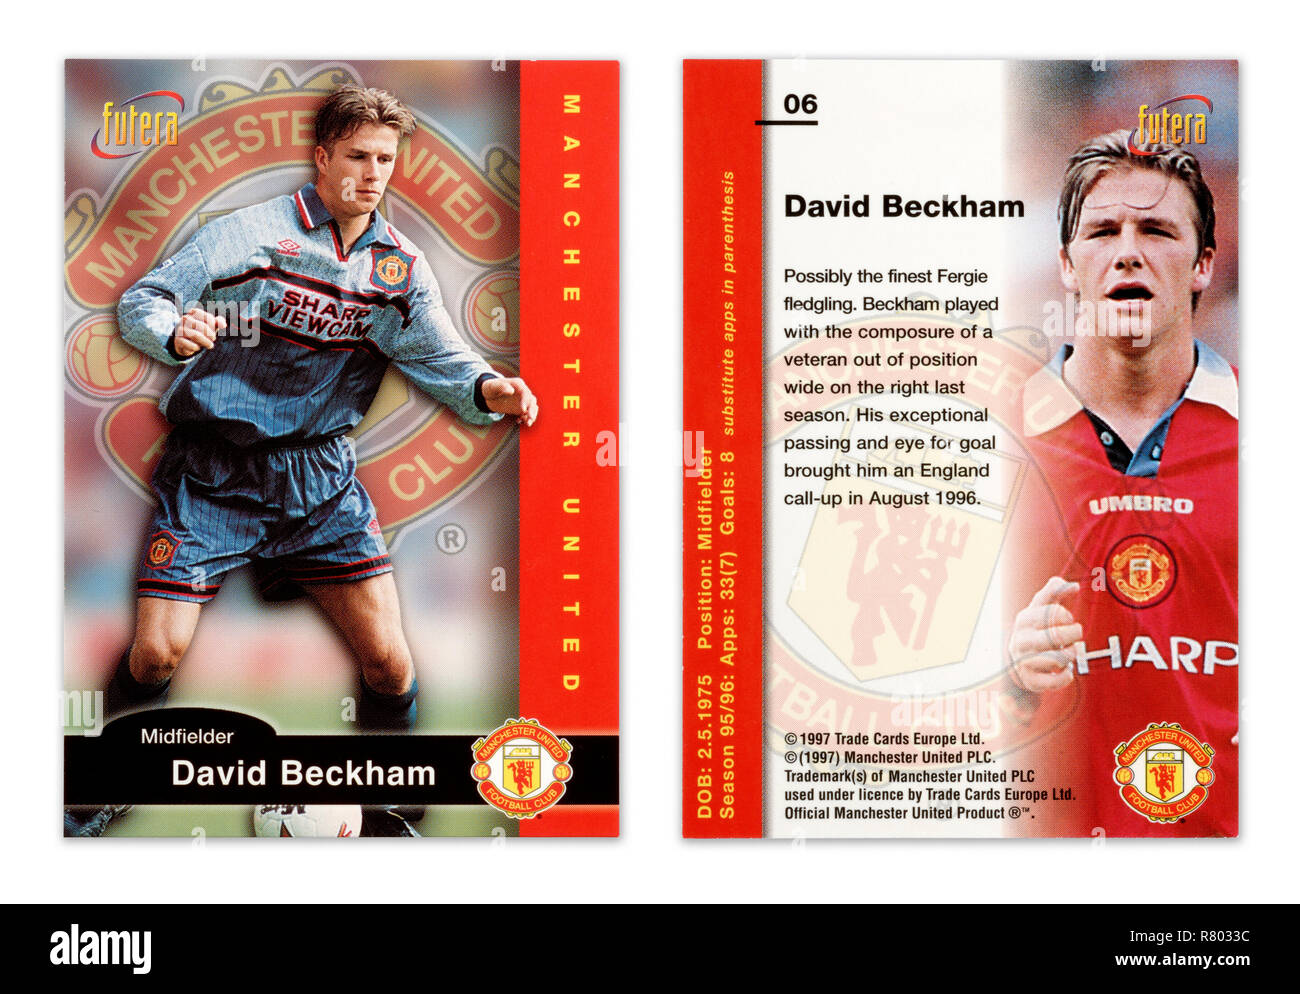 L'avant et l'arrière d'une carte de joueur de football Futera de 1997 mettant en vedette David Beckham jouer pour Manchester United Banque D'Images